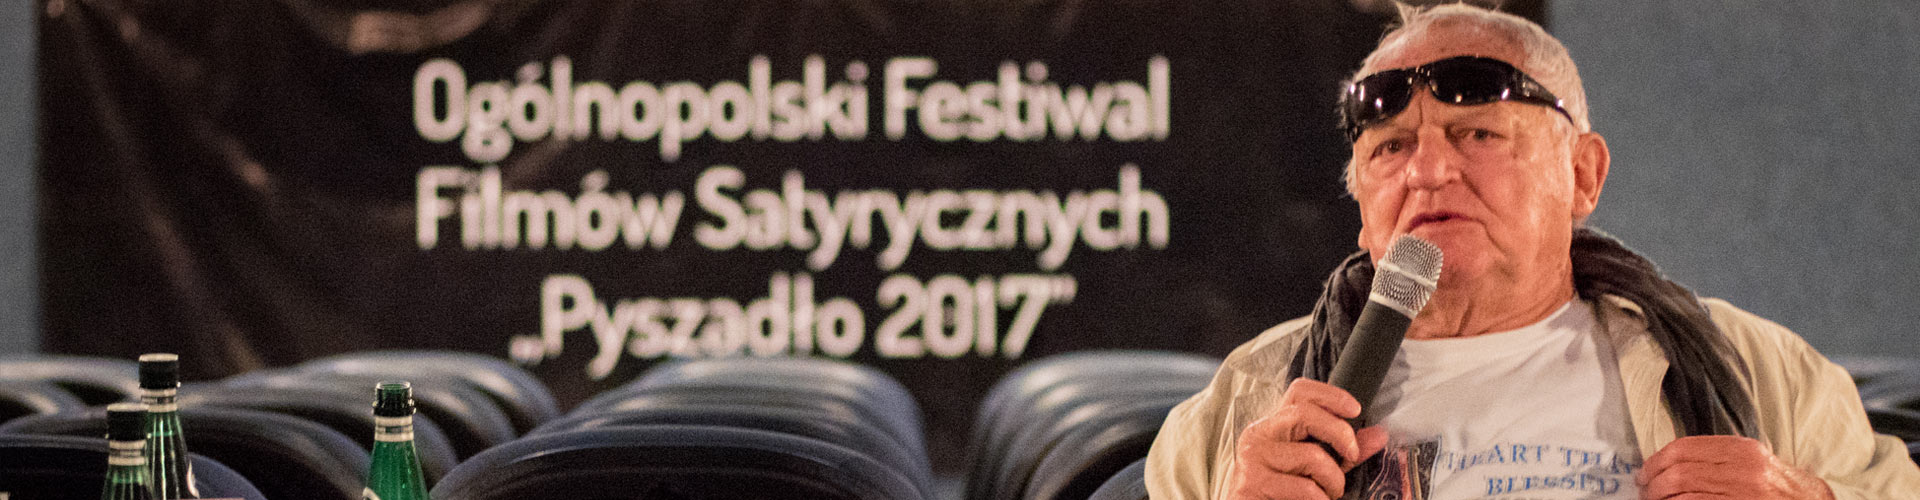 Festiwal Pyszadło